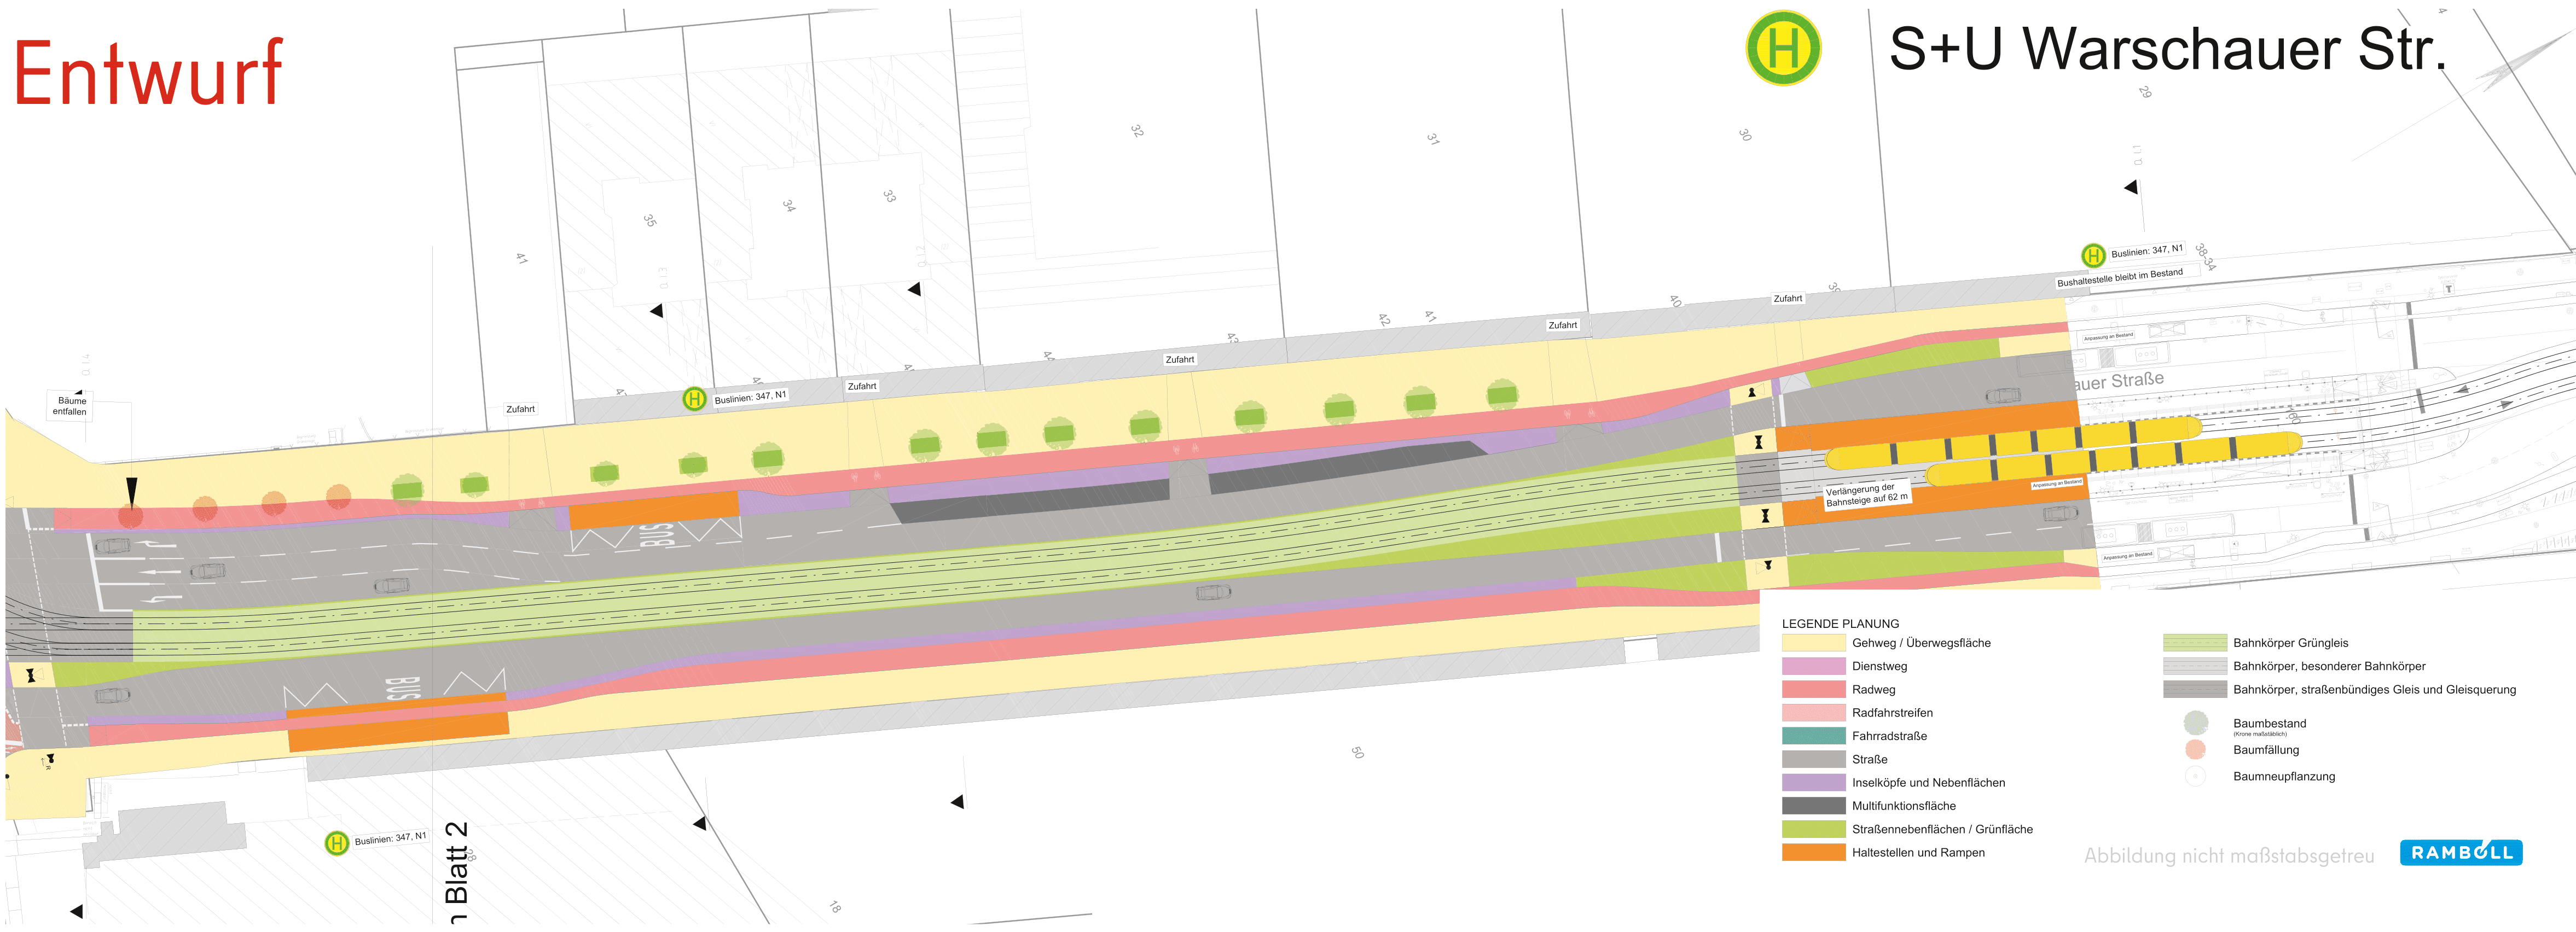 Diese Abbildung zeigt eine technische Zeichnung des Bauabschnitts Warschauer Straße